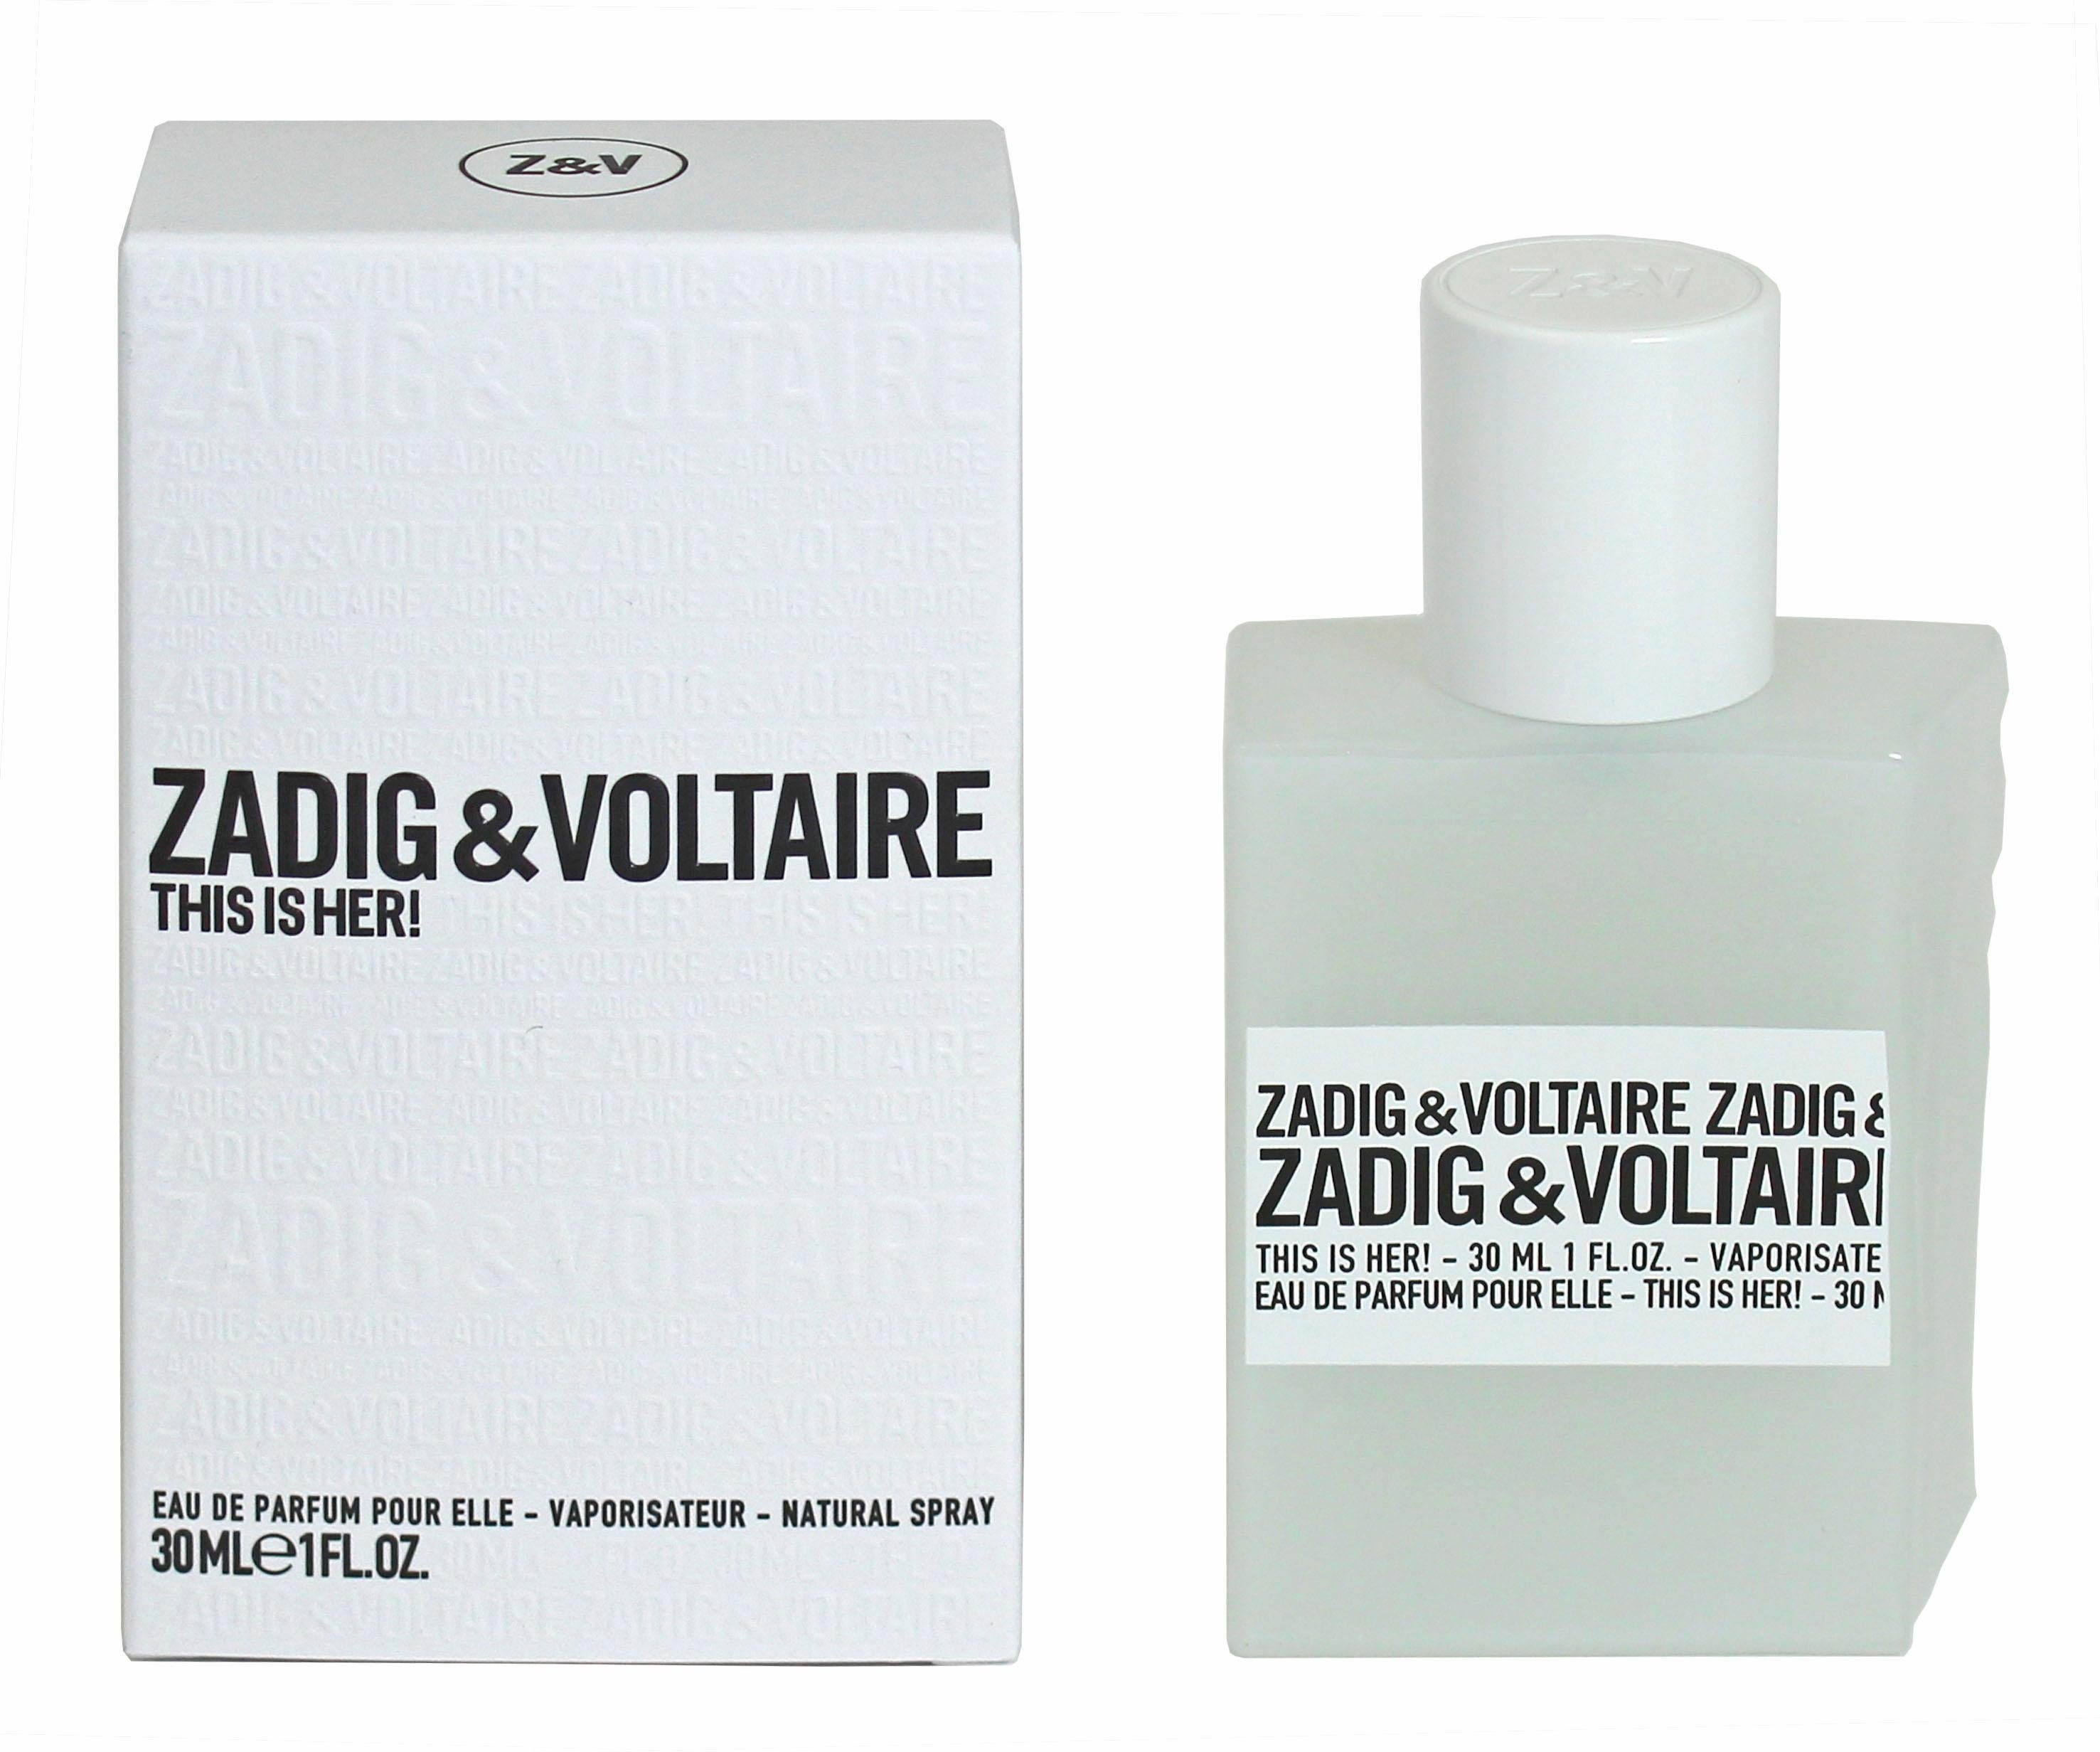 Parfum de VOLTAIRE This Eau ZADIG & is Her!